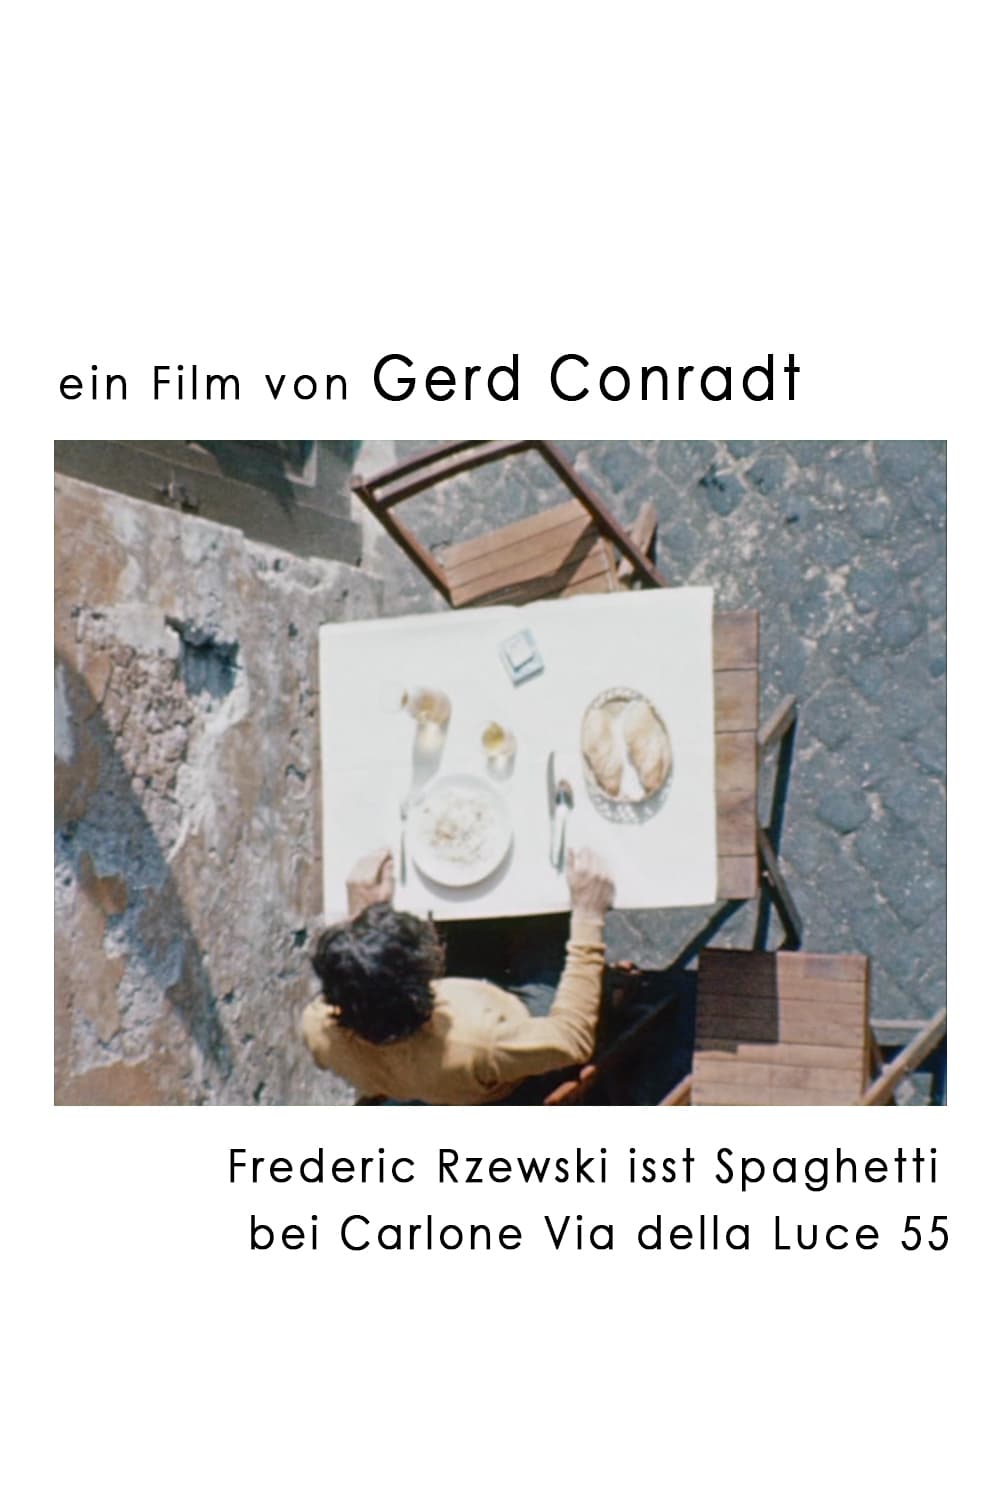 Frederic Rzewski eats spaghetti at Carlone Via della Luce 55